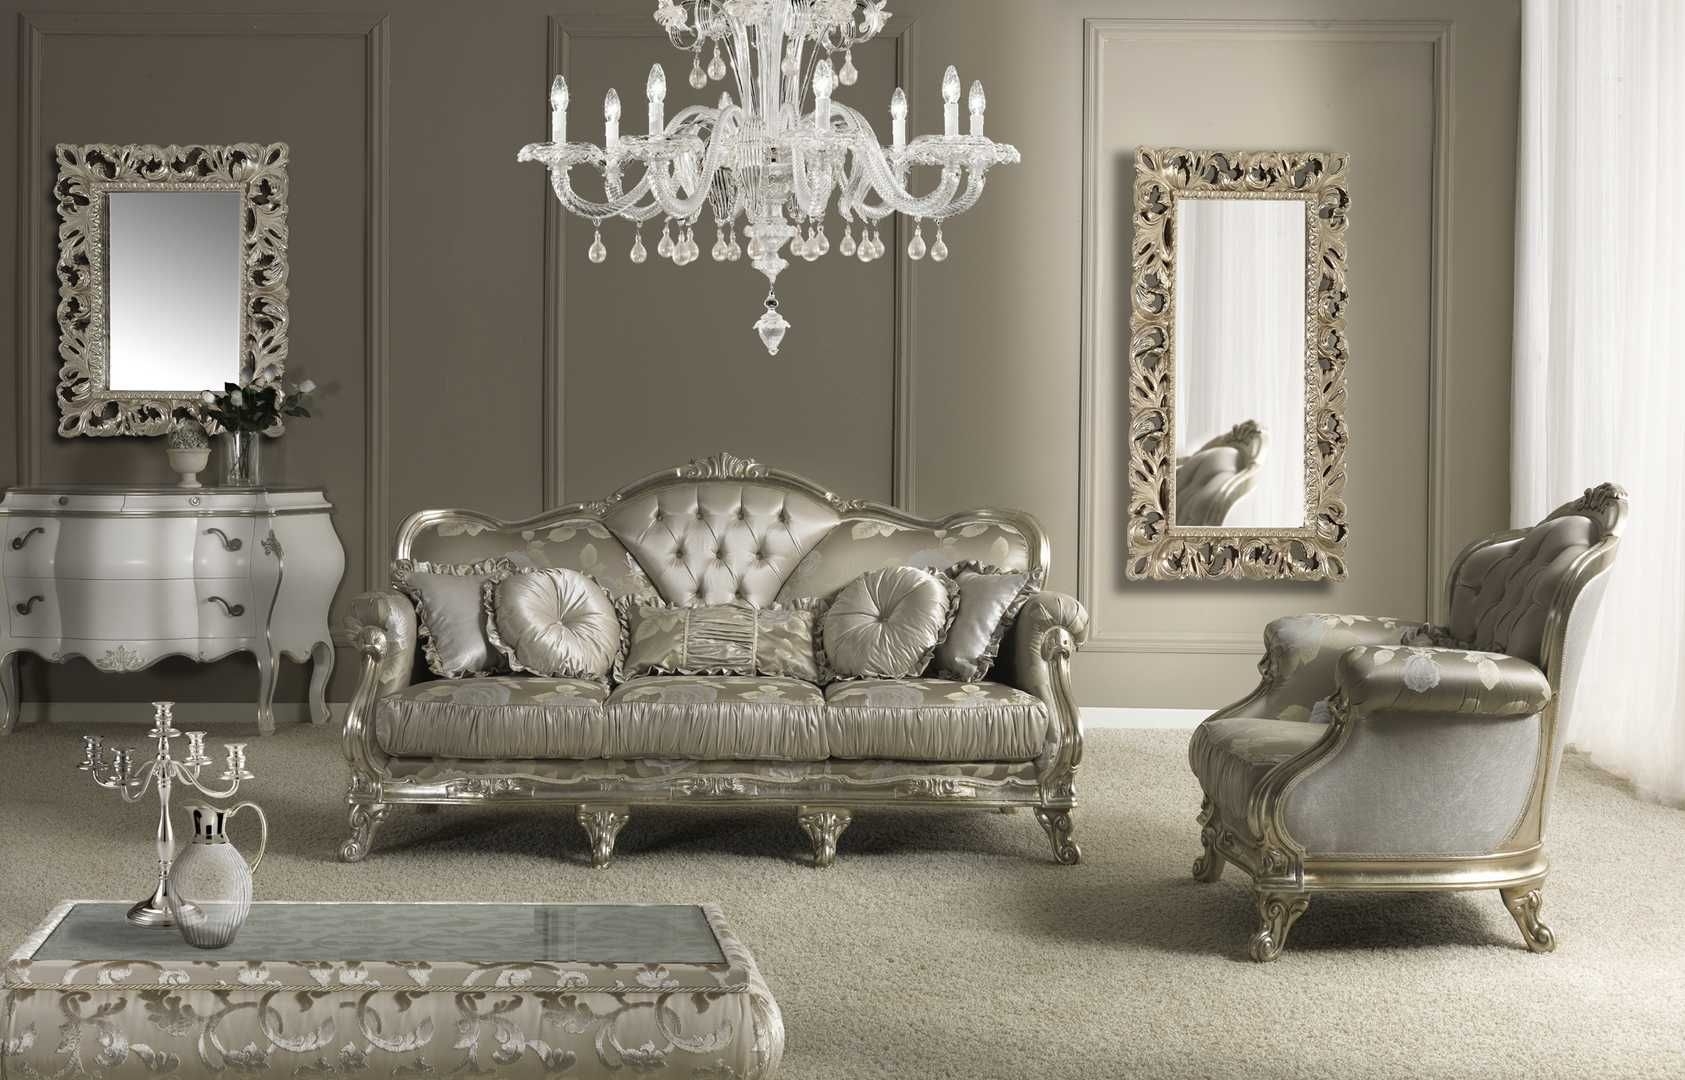 Sheet in elegant light gray living room interior ideas design